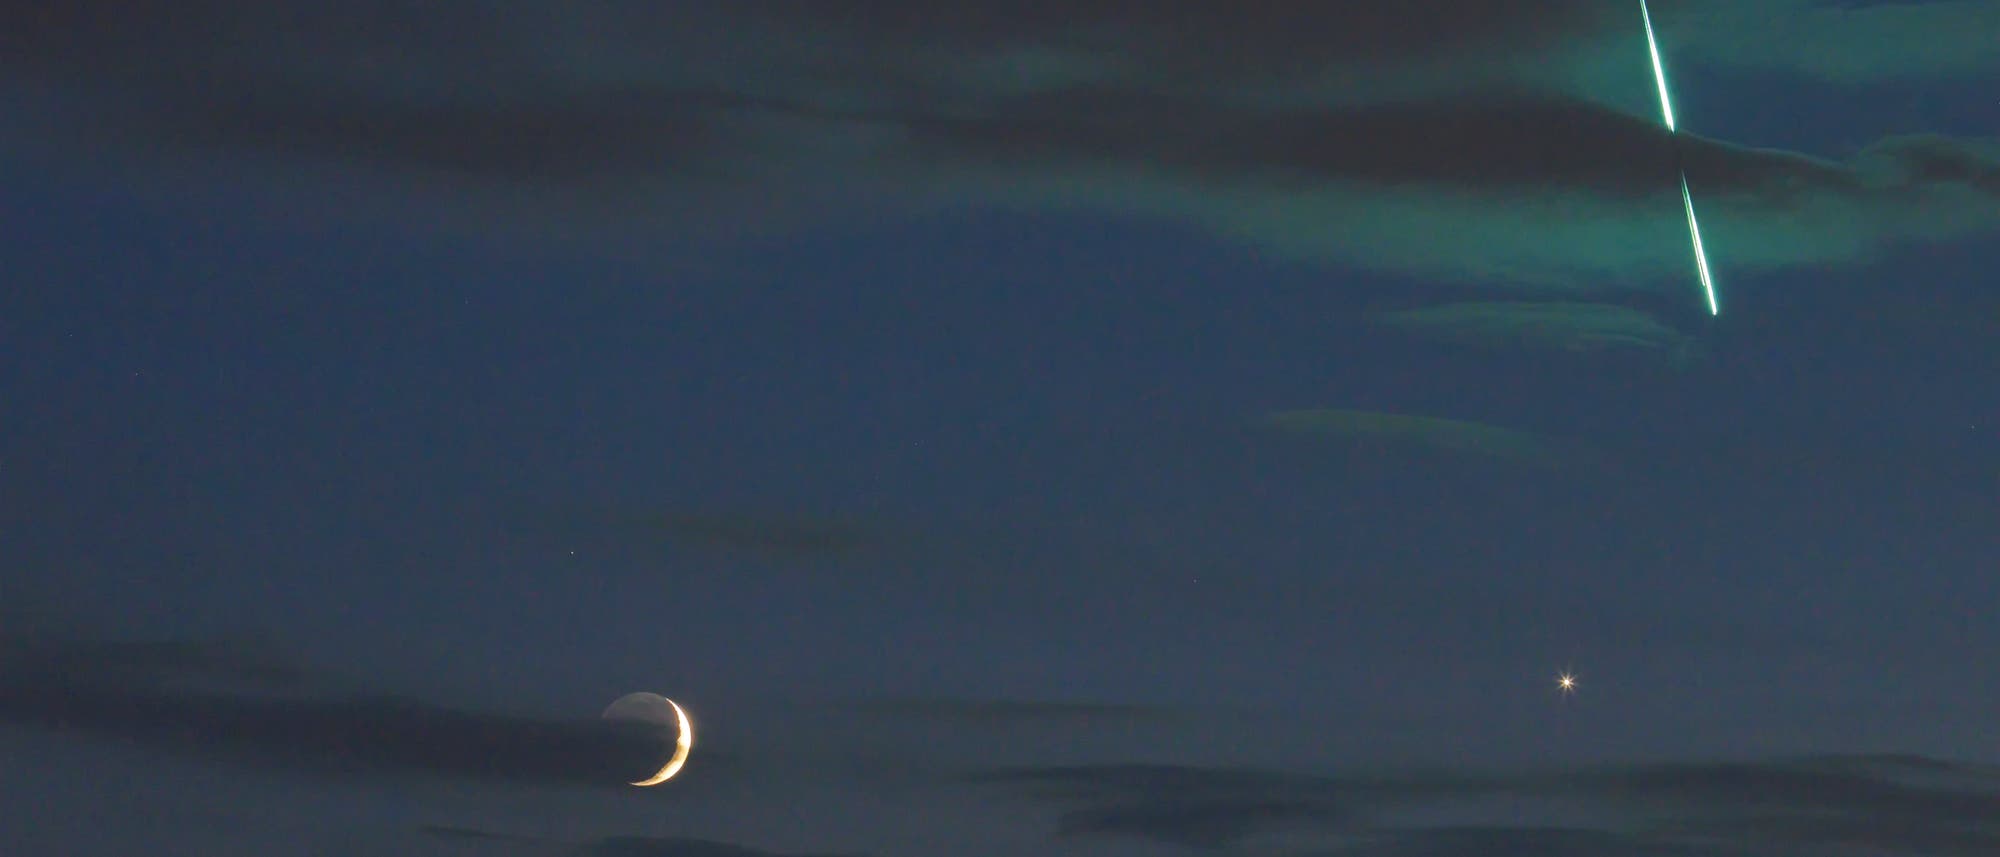 Uwe Reichert fotografierte die Konjunktion von Mond und Venus am Abend des 16. Juni 2018, als um 23:11 Uhr MESZ eine Feuerkugel durch das Sichtfeld der Kamera zog.